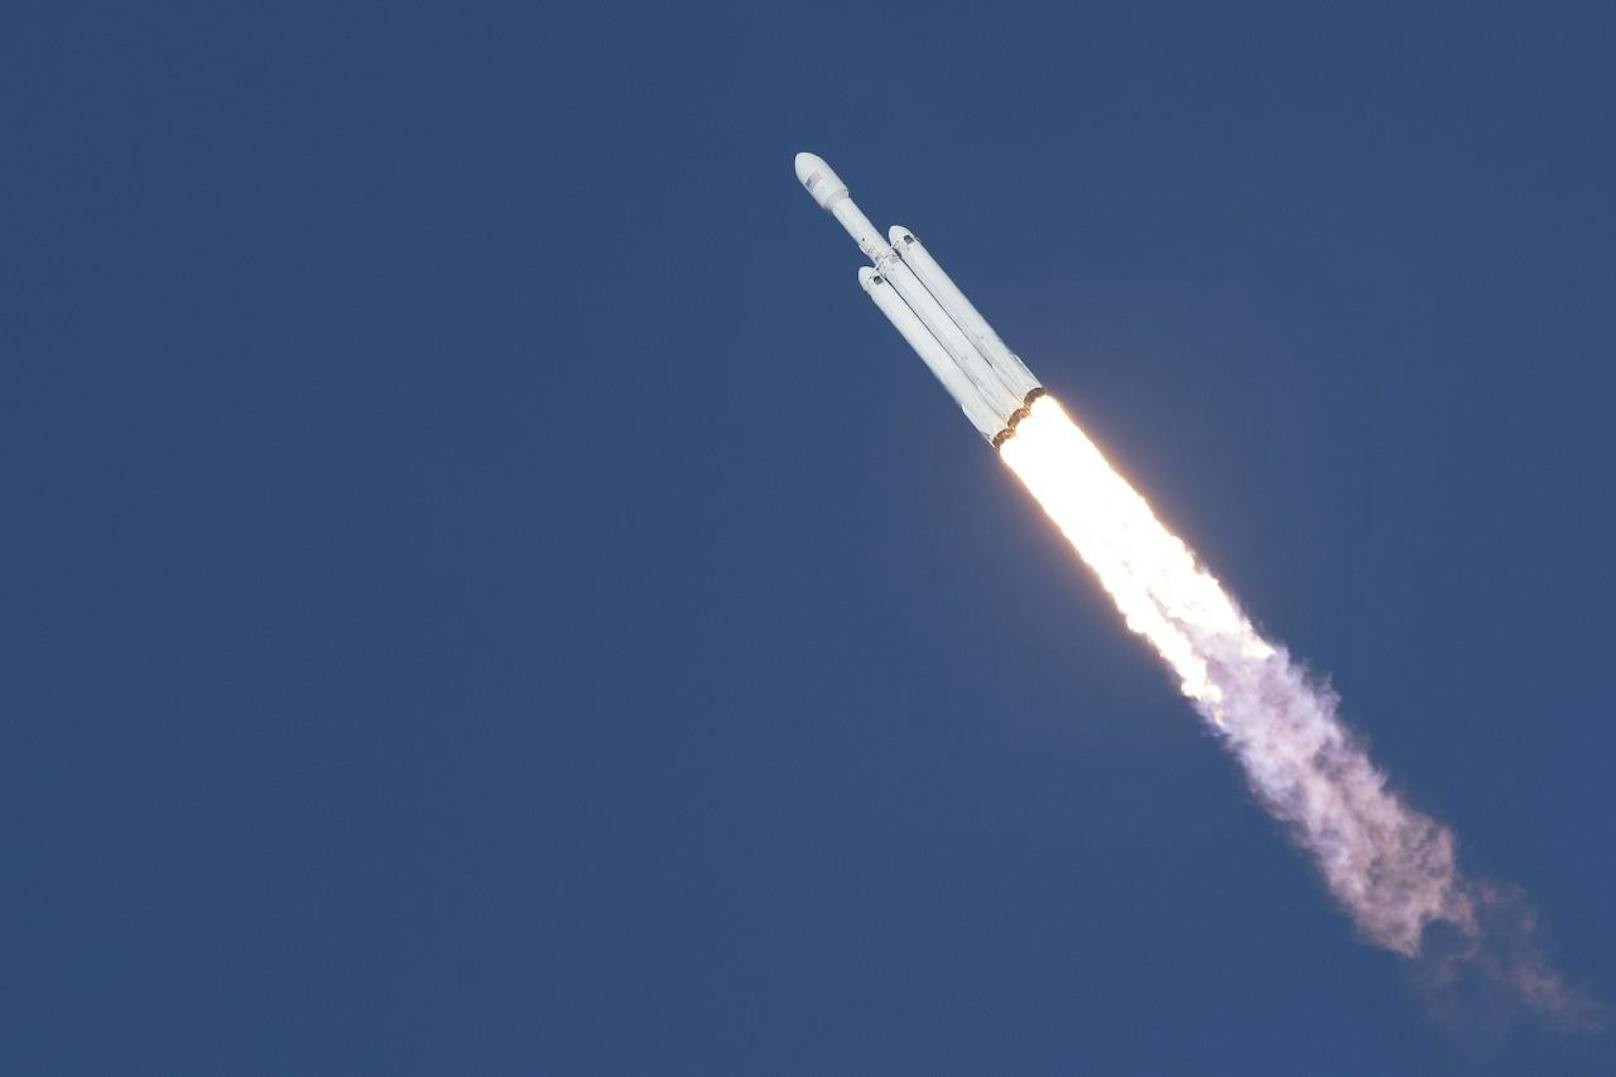 Bei der Jungfernreise der Falcon Heavy handelt es sich um einen reinen Testflug. Zunächst geplant, um Menschen zum Mond oder Mars zu bringen, soll sie nun vor allem Versorgungsmaterial ins Weltall bringen, wie Musk am Montag sagte.